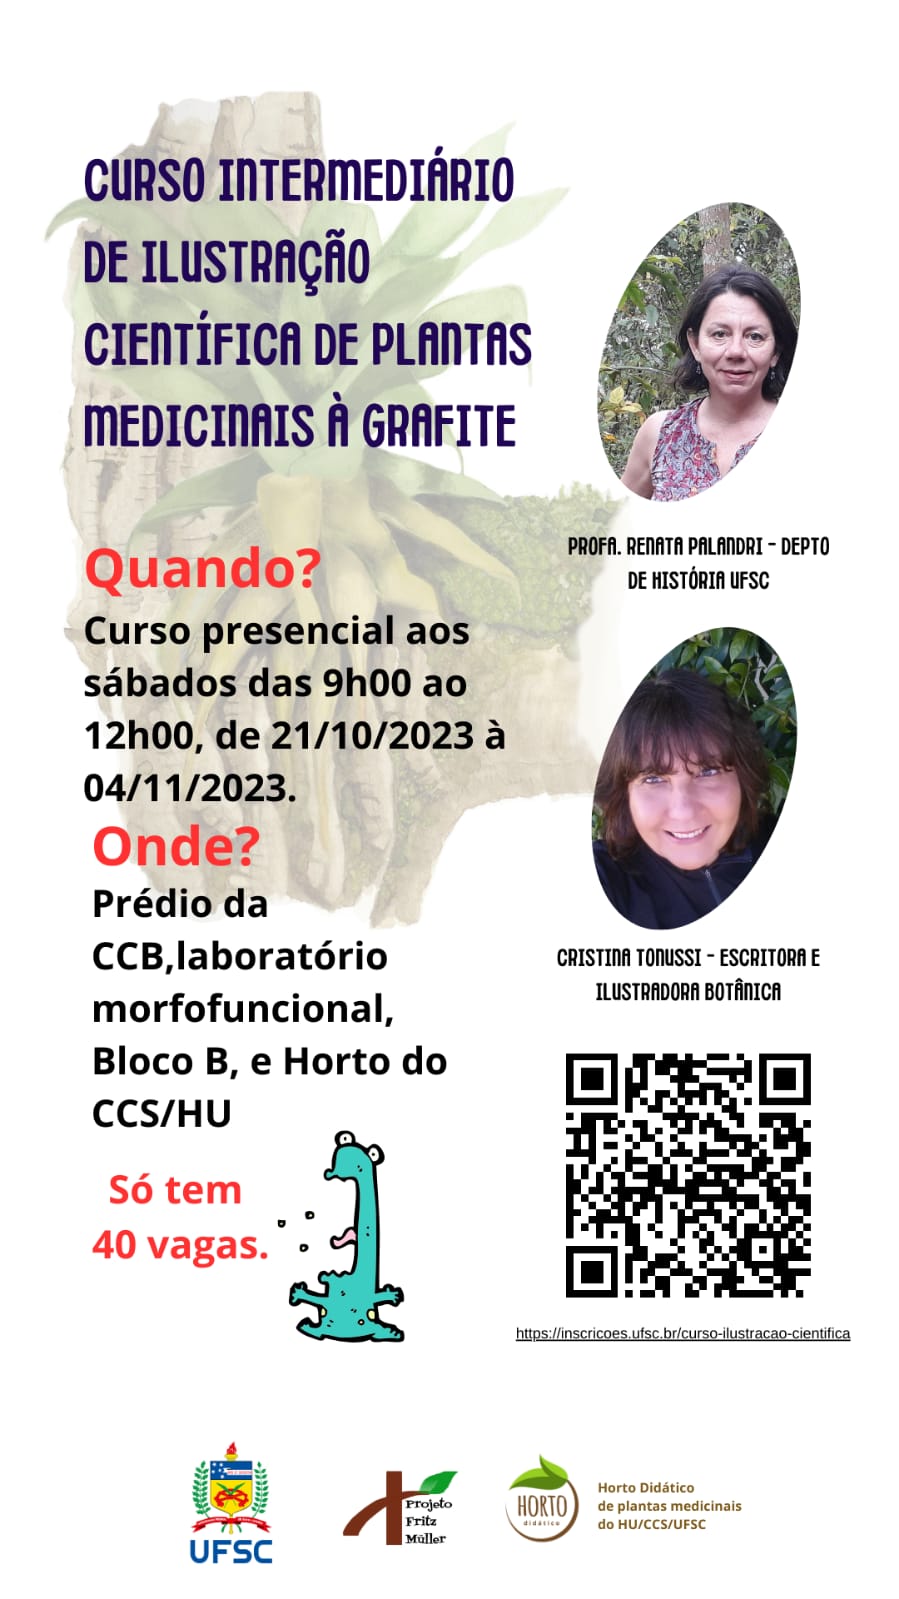 Amigos do Horto Didático de Plantas Medicinais do HU/CCS/UFSC